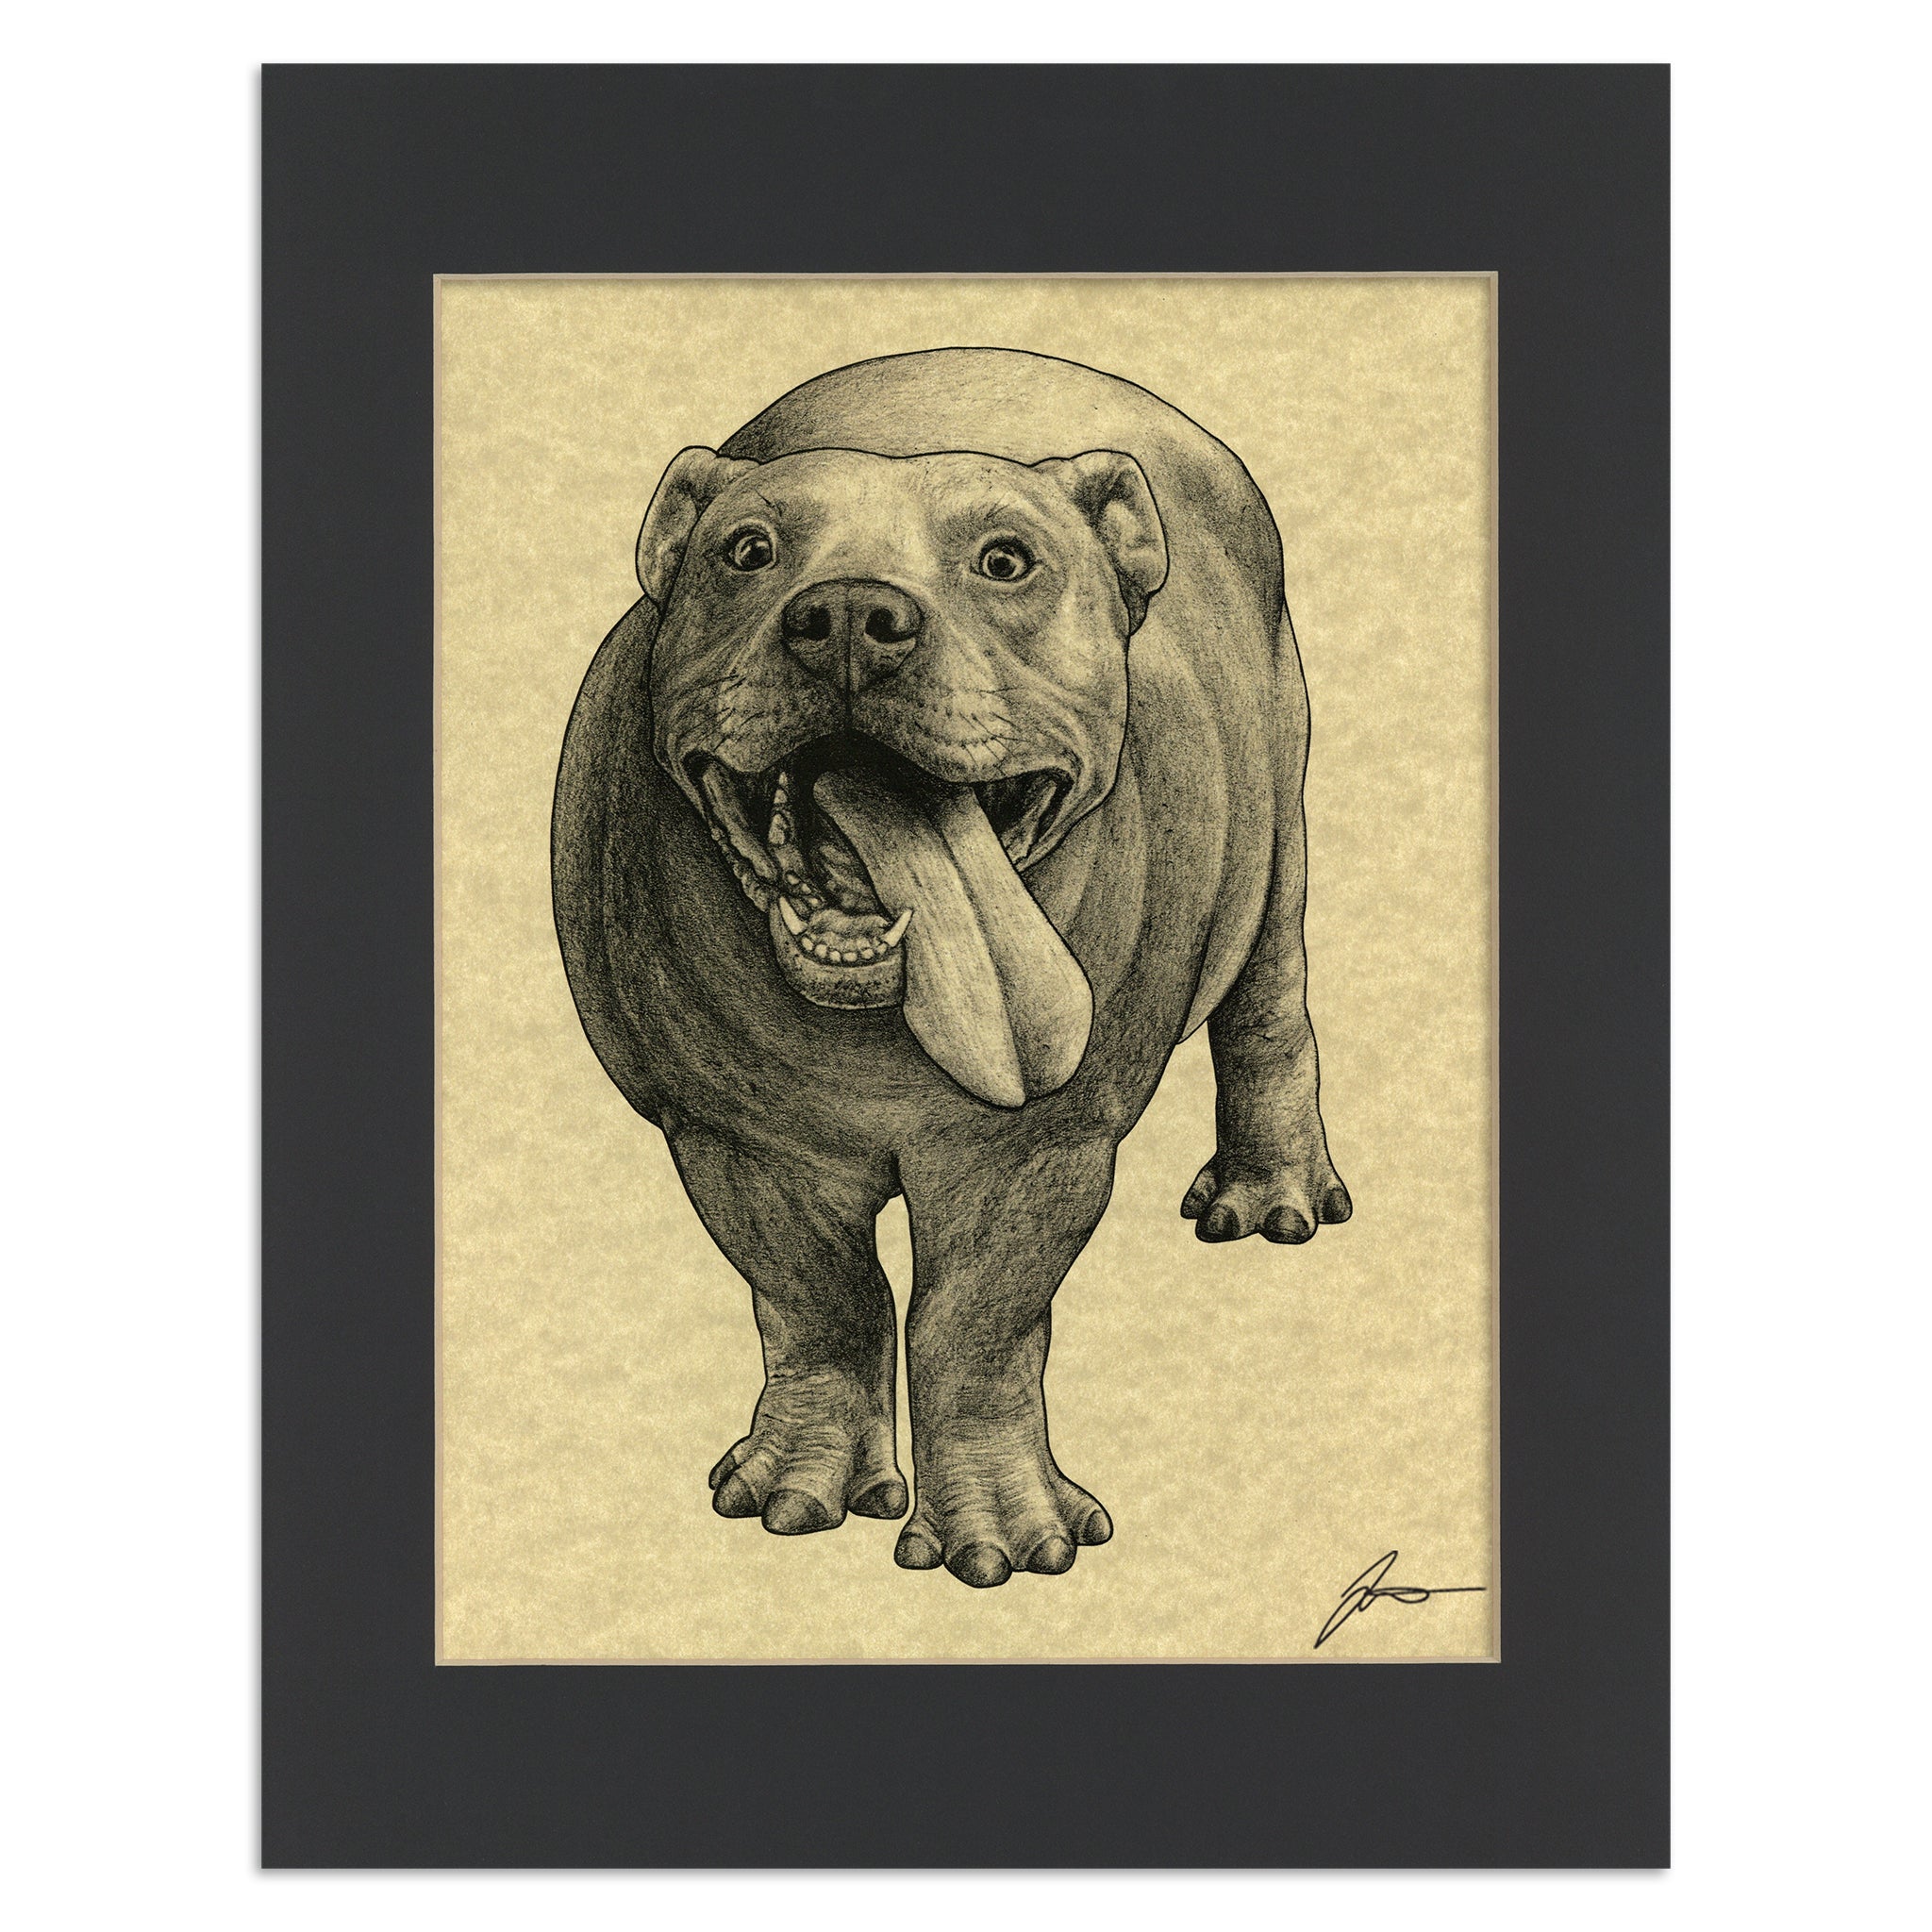 Pitopotamus | Pitbull + Hippopotamus Hybrid Animal | 11x14" Parchment Print